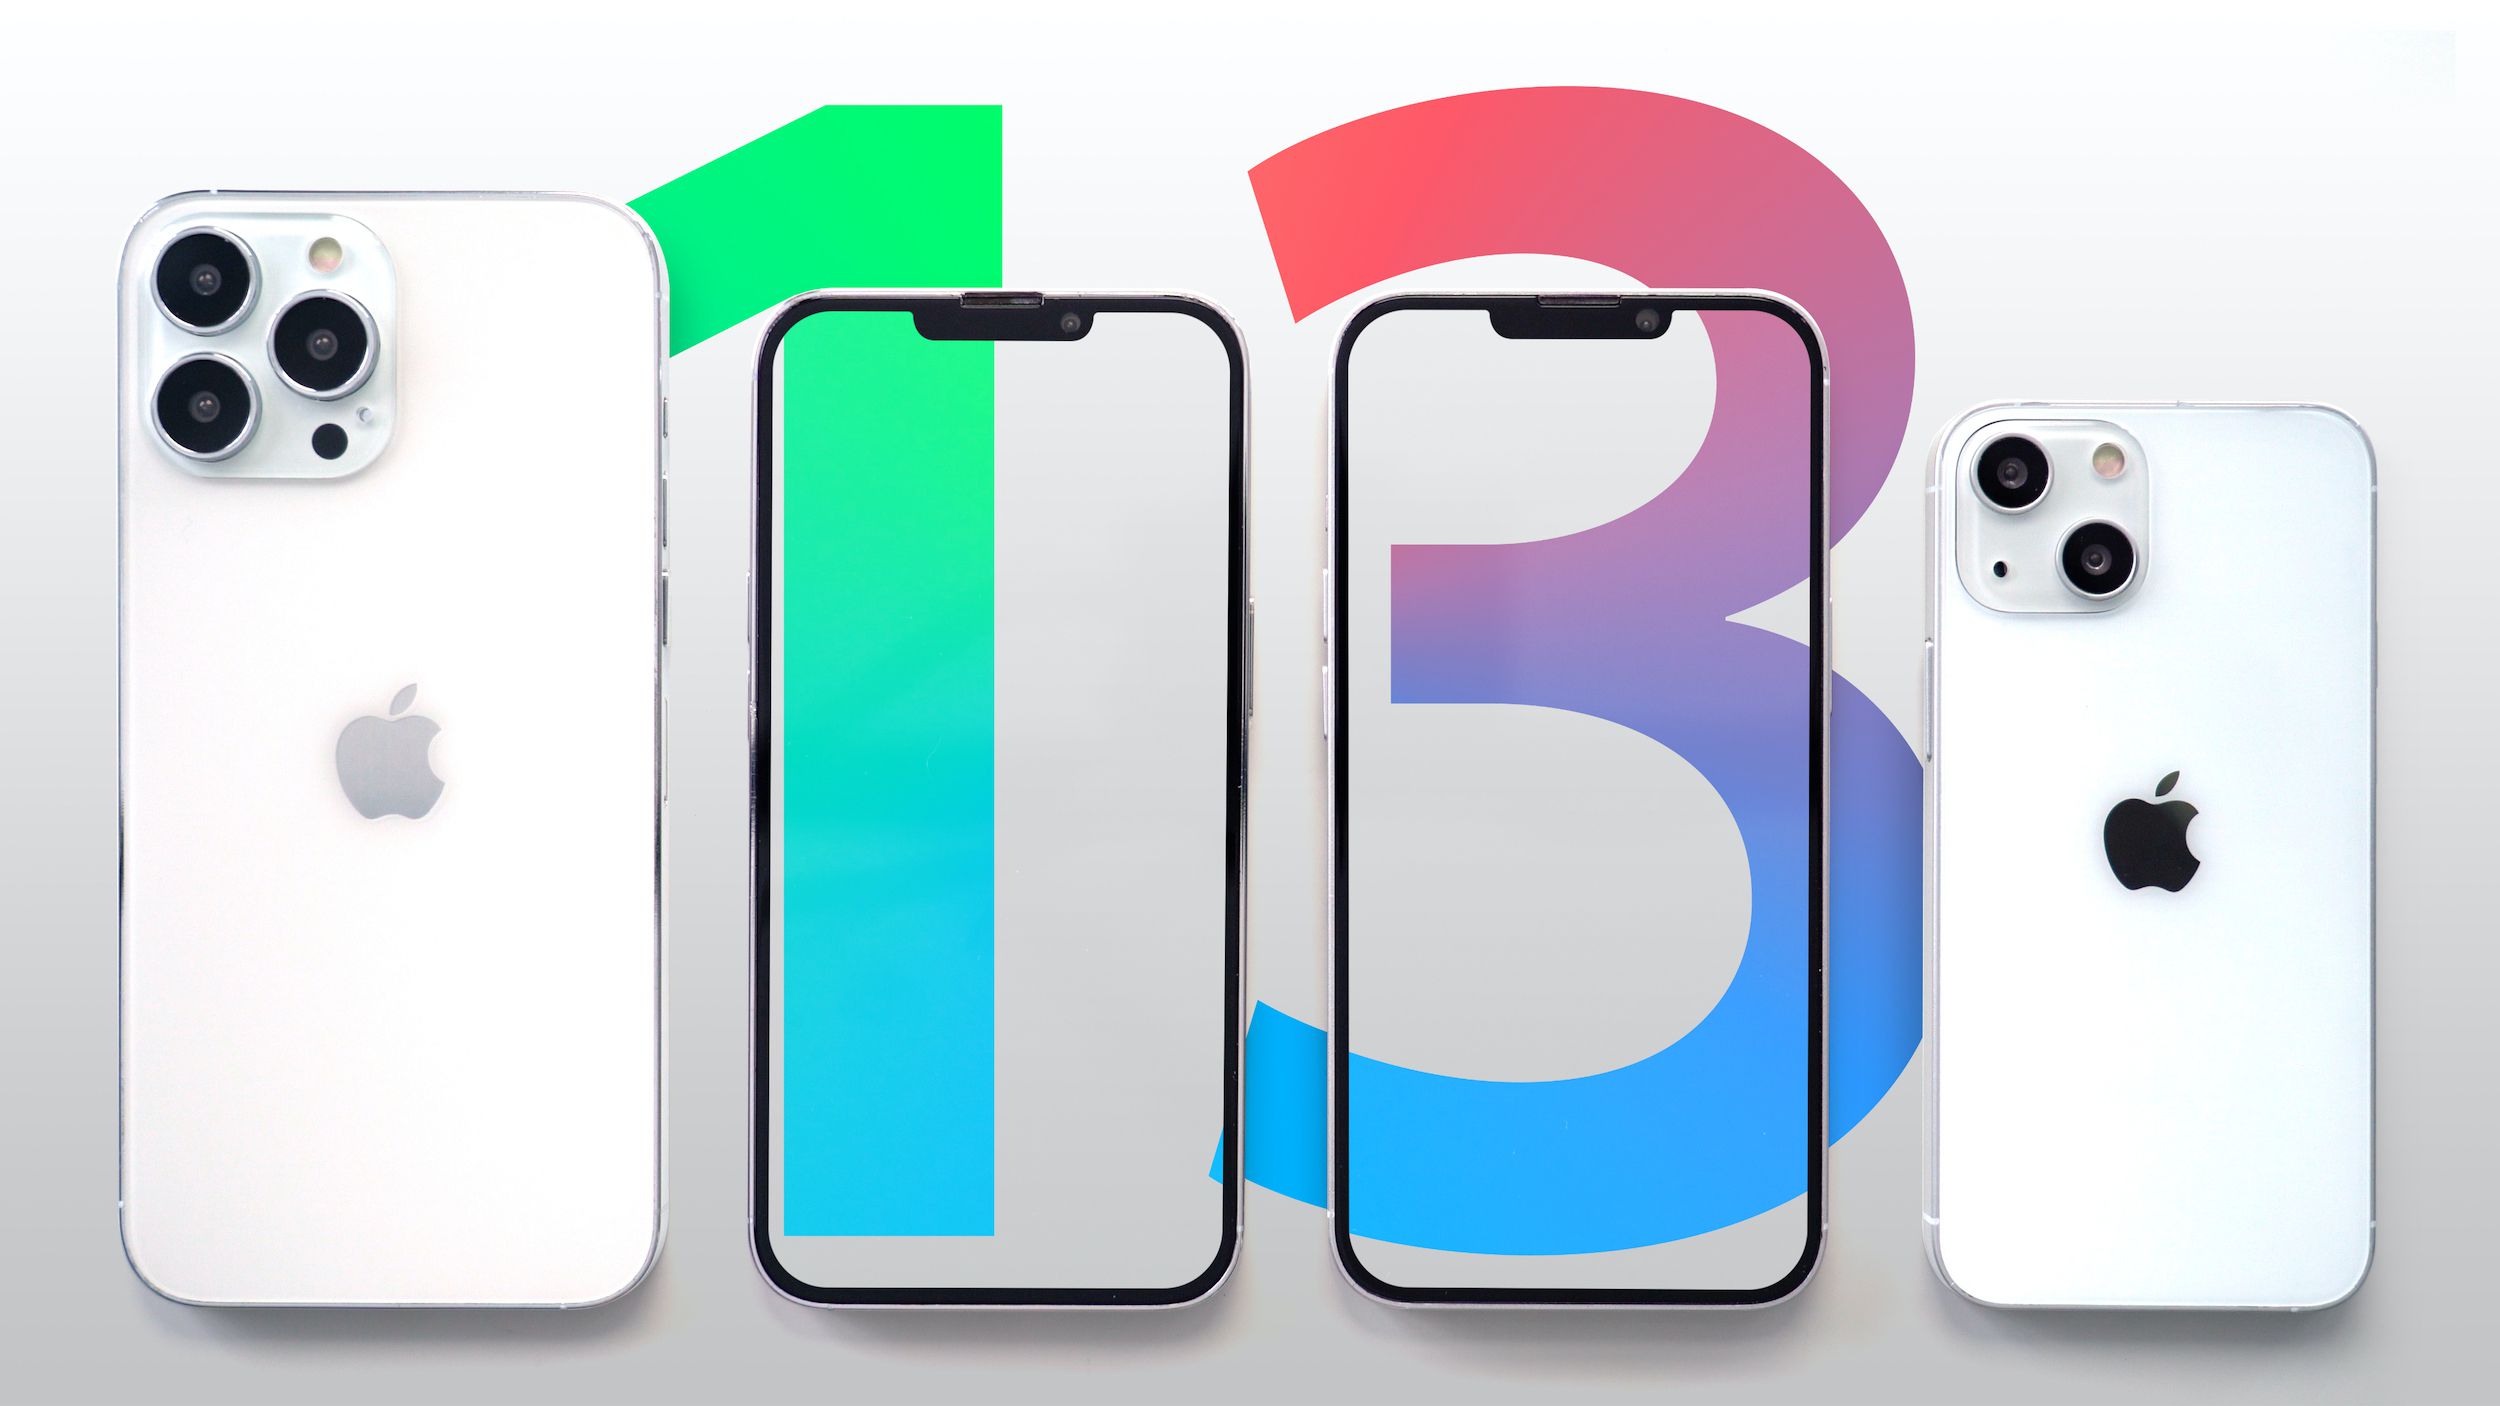 تیم کوک مدیرعامل کمپانی اپل بالاخره از آیفون 13 بسیار مورد انتظار خود رونمایی کرد و این بار رنگ خاص آن صورتی است.